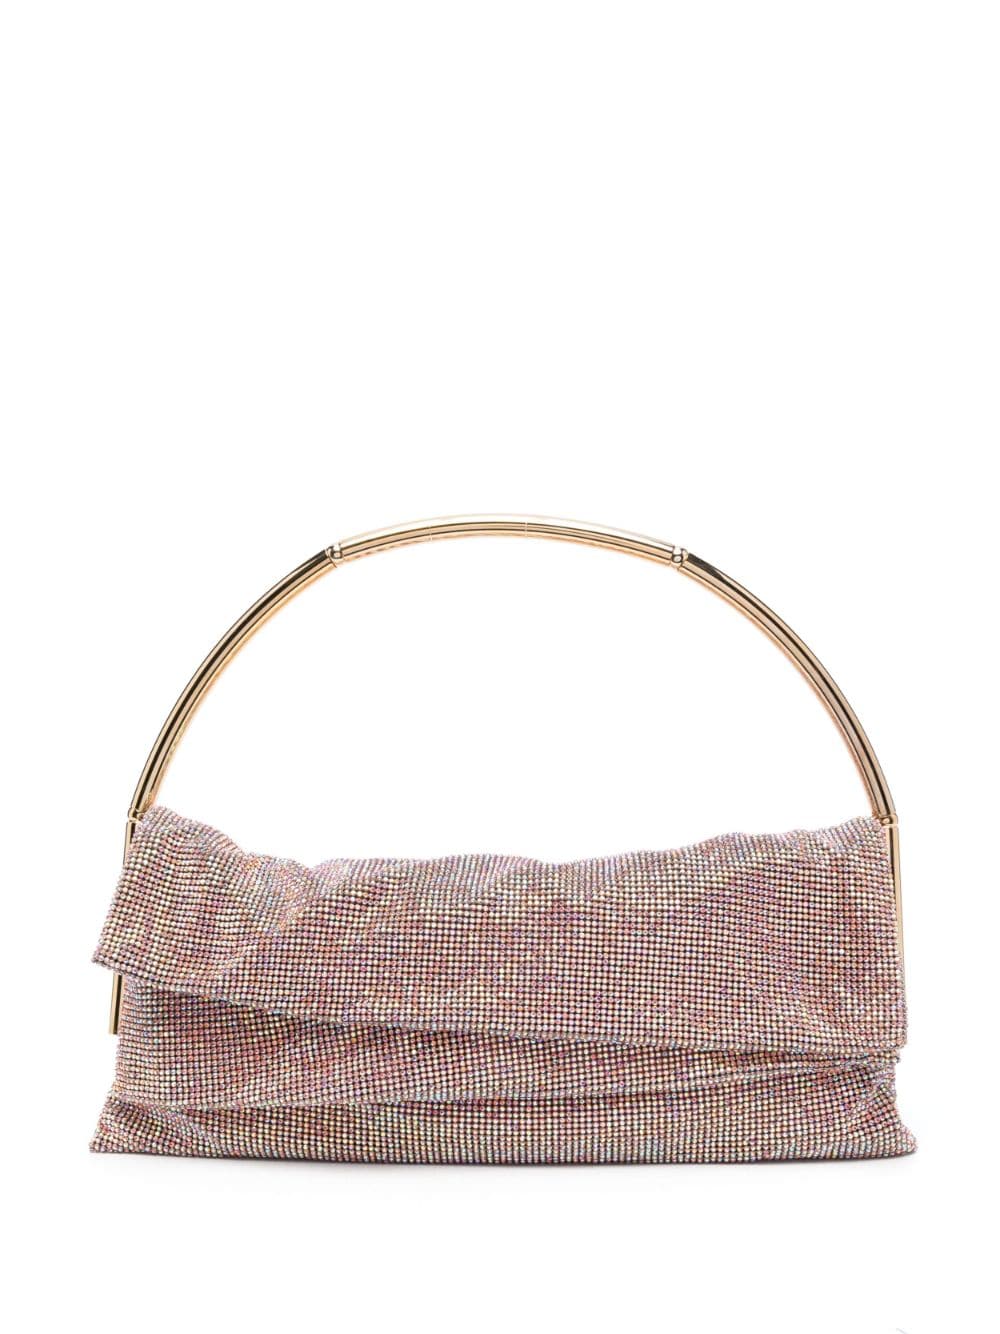 Benedetta Bruzziches crystal-embellished shoulder bag - Pink von Benedetta Bruzziches